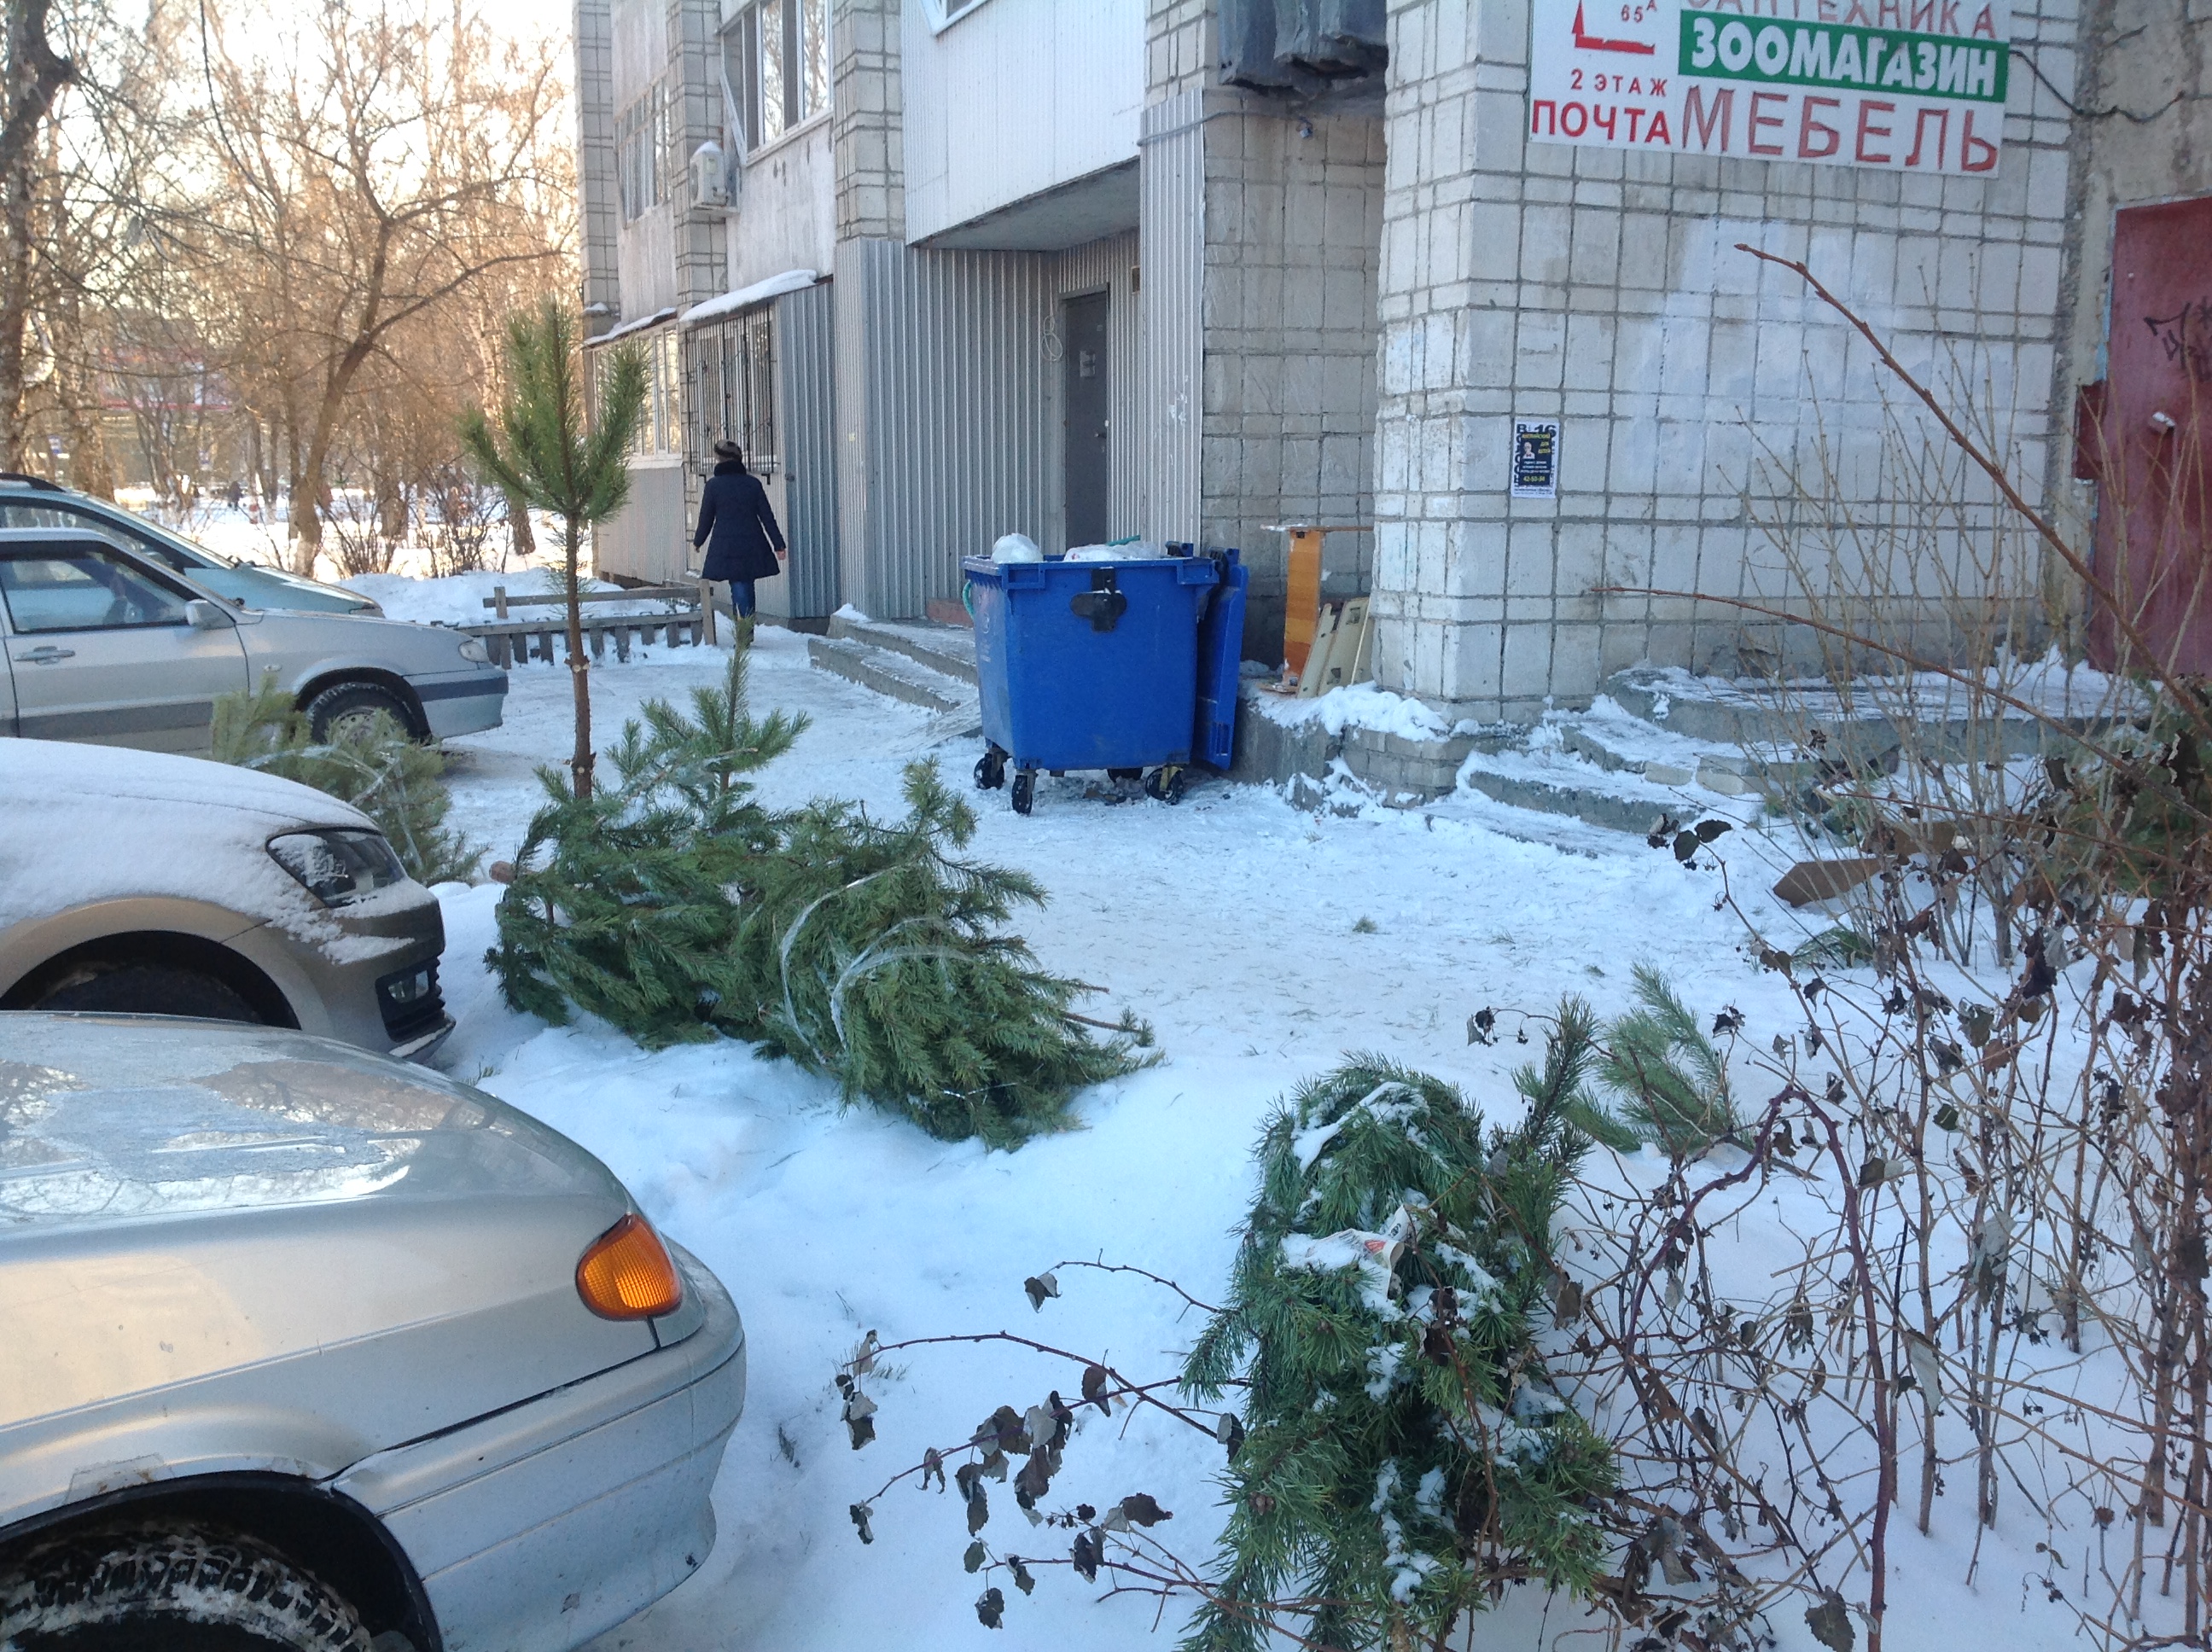 Сайт горкомхоз ульяновск. Елка на контейнерной площадке. Утилизация новогодних елок. Новогодняя елка в мусорном баке. Выброшенная Новогодняя елка.